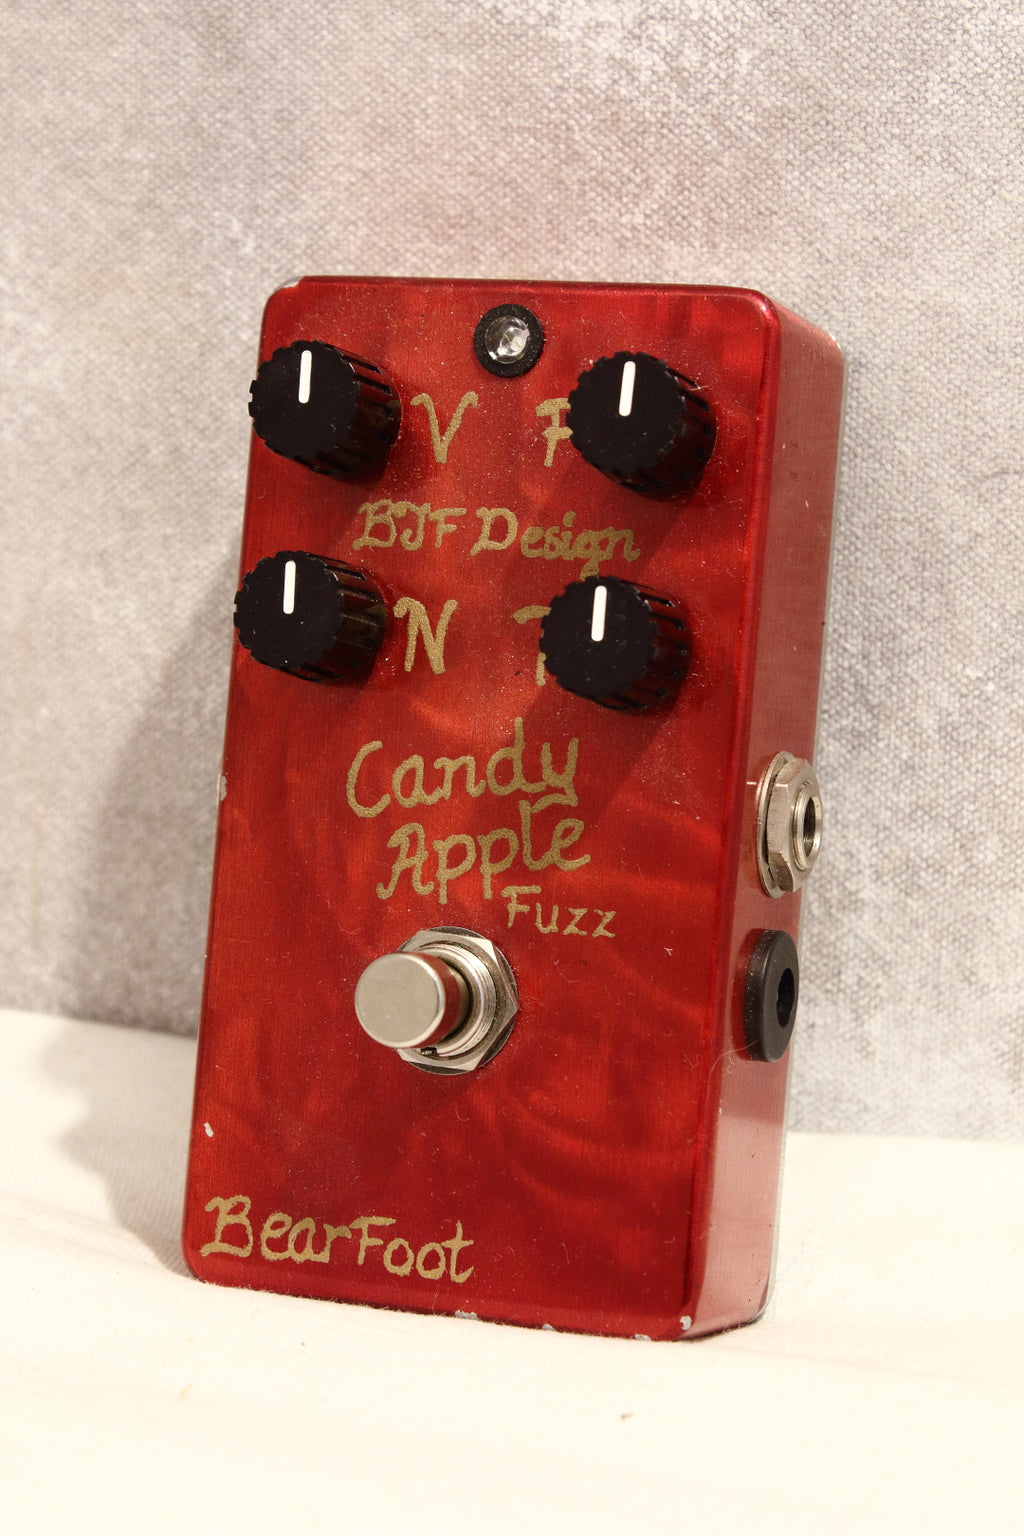 Bearfoot FX Candy Apple Fuzz Gold Pedal